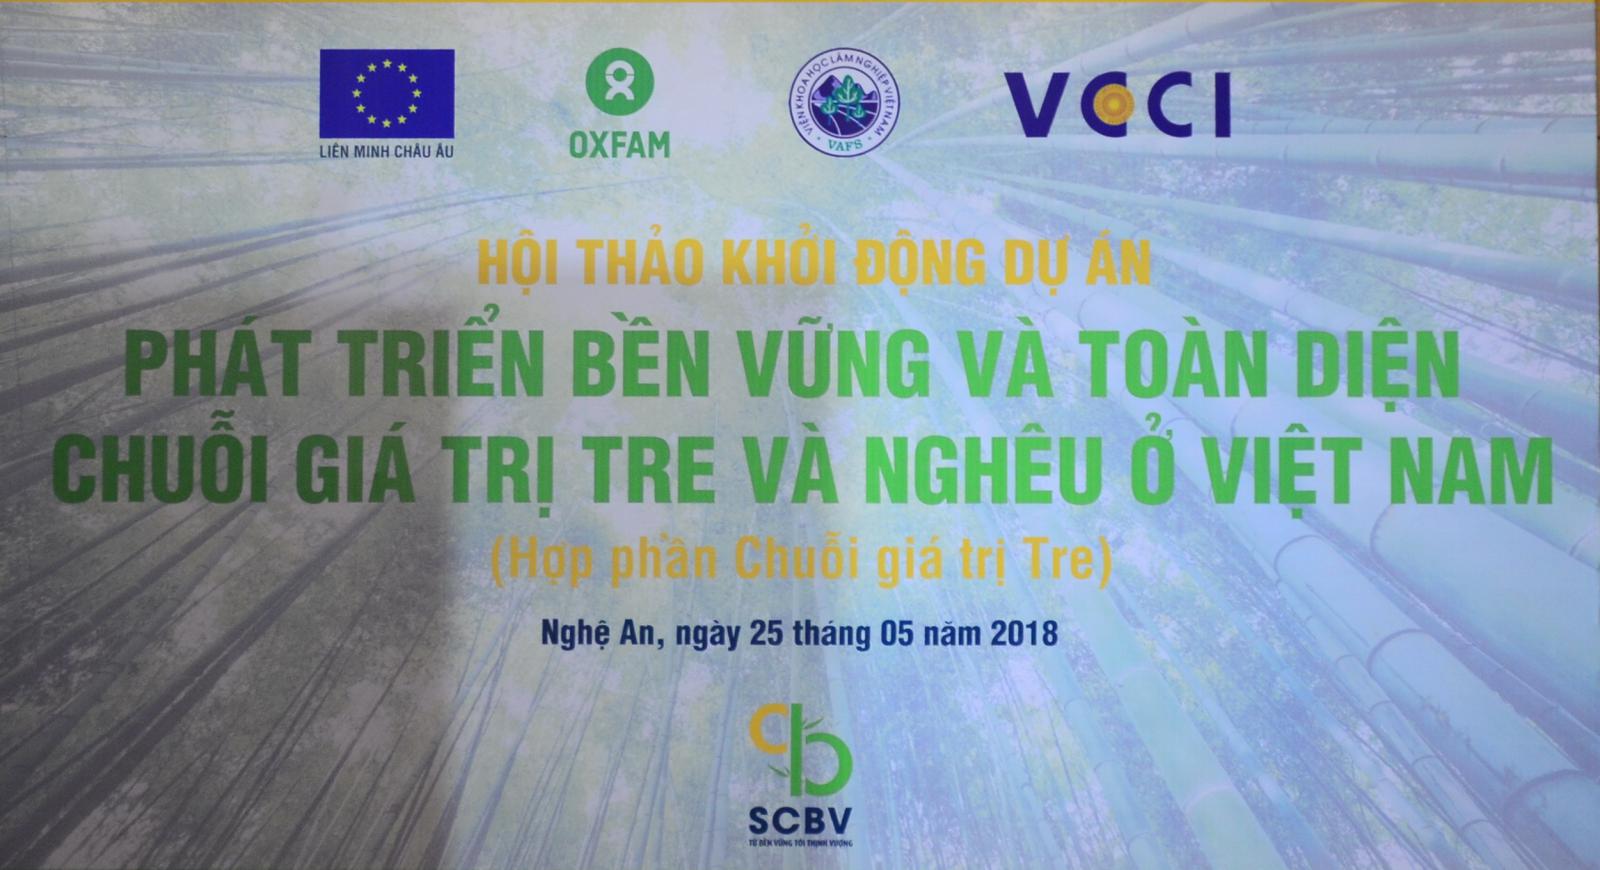 Dự án “Phát triển bền vững và toàn diện chuỗi giá trị tre và nghêu tại Việt Nam” đã chính thức khởi động ngày 25/5/2018.